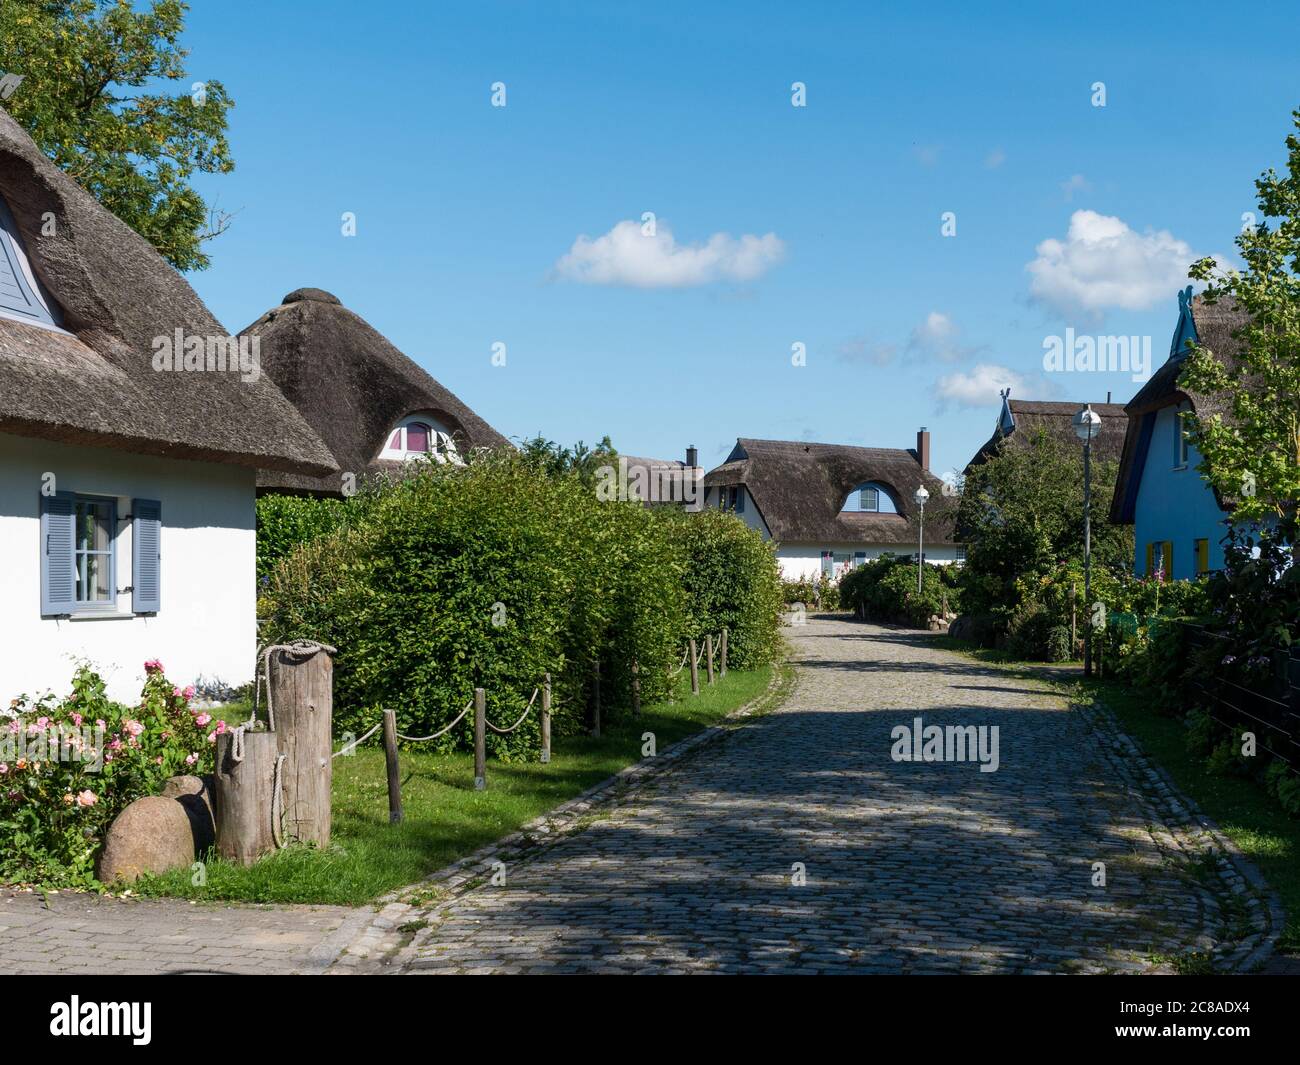 Gemeinde Putgarten auf der Halbinsel Wittow auf Rügen Häuser und Straßenansicht der Ferienhäuser nähe Kap Arkona Urlaub in Deutschland Stock Photo